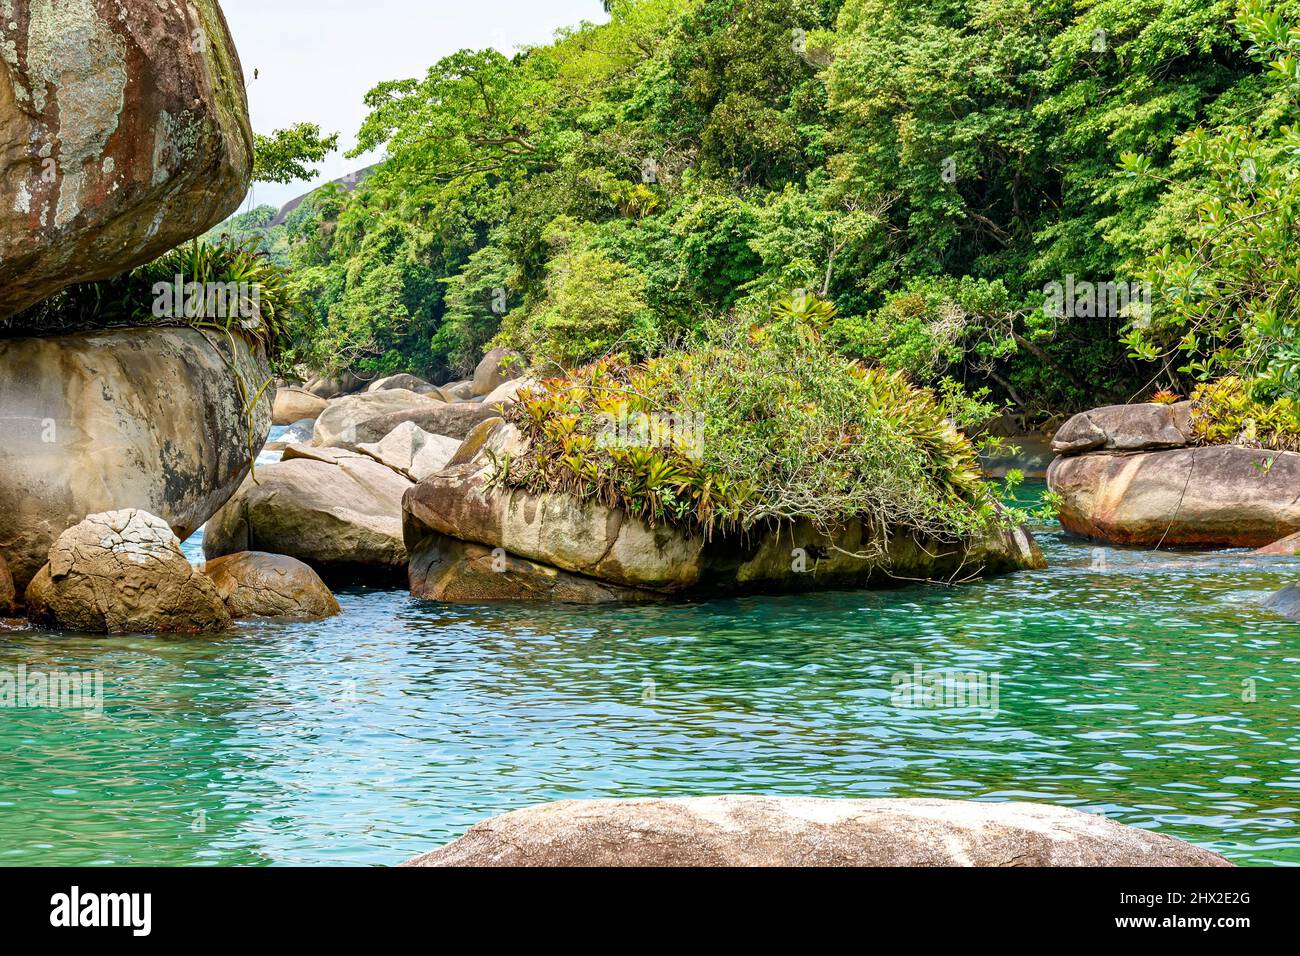 Acqua salata laguna tra le rocce e la foresta tropicale conservata a Trindade sulla costa meridionale dello stato di Rio de Janeiro. Foto Stock